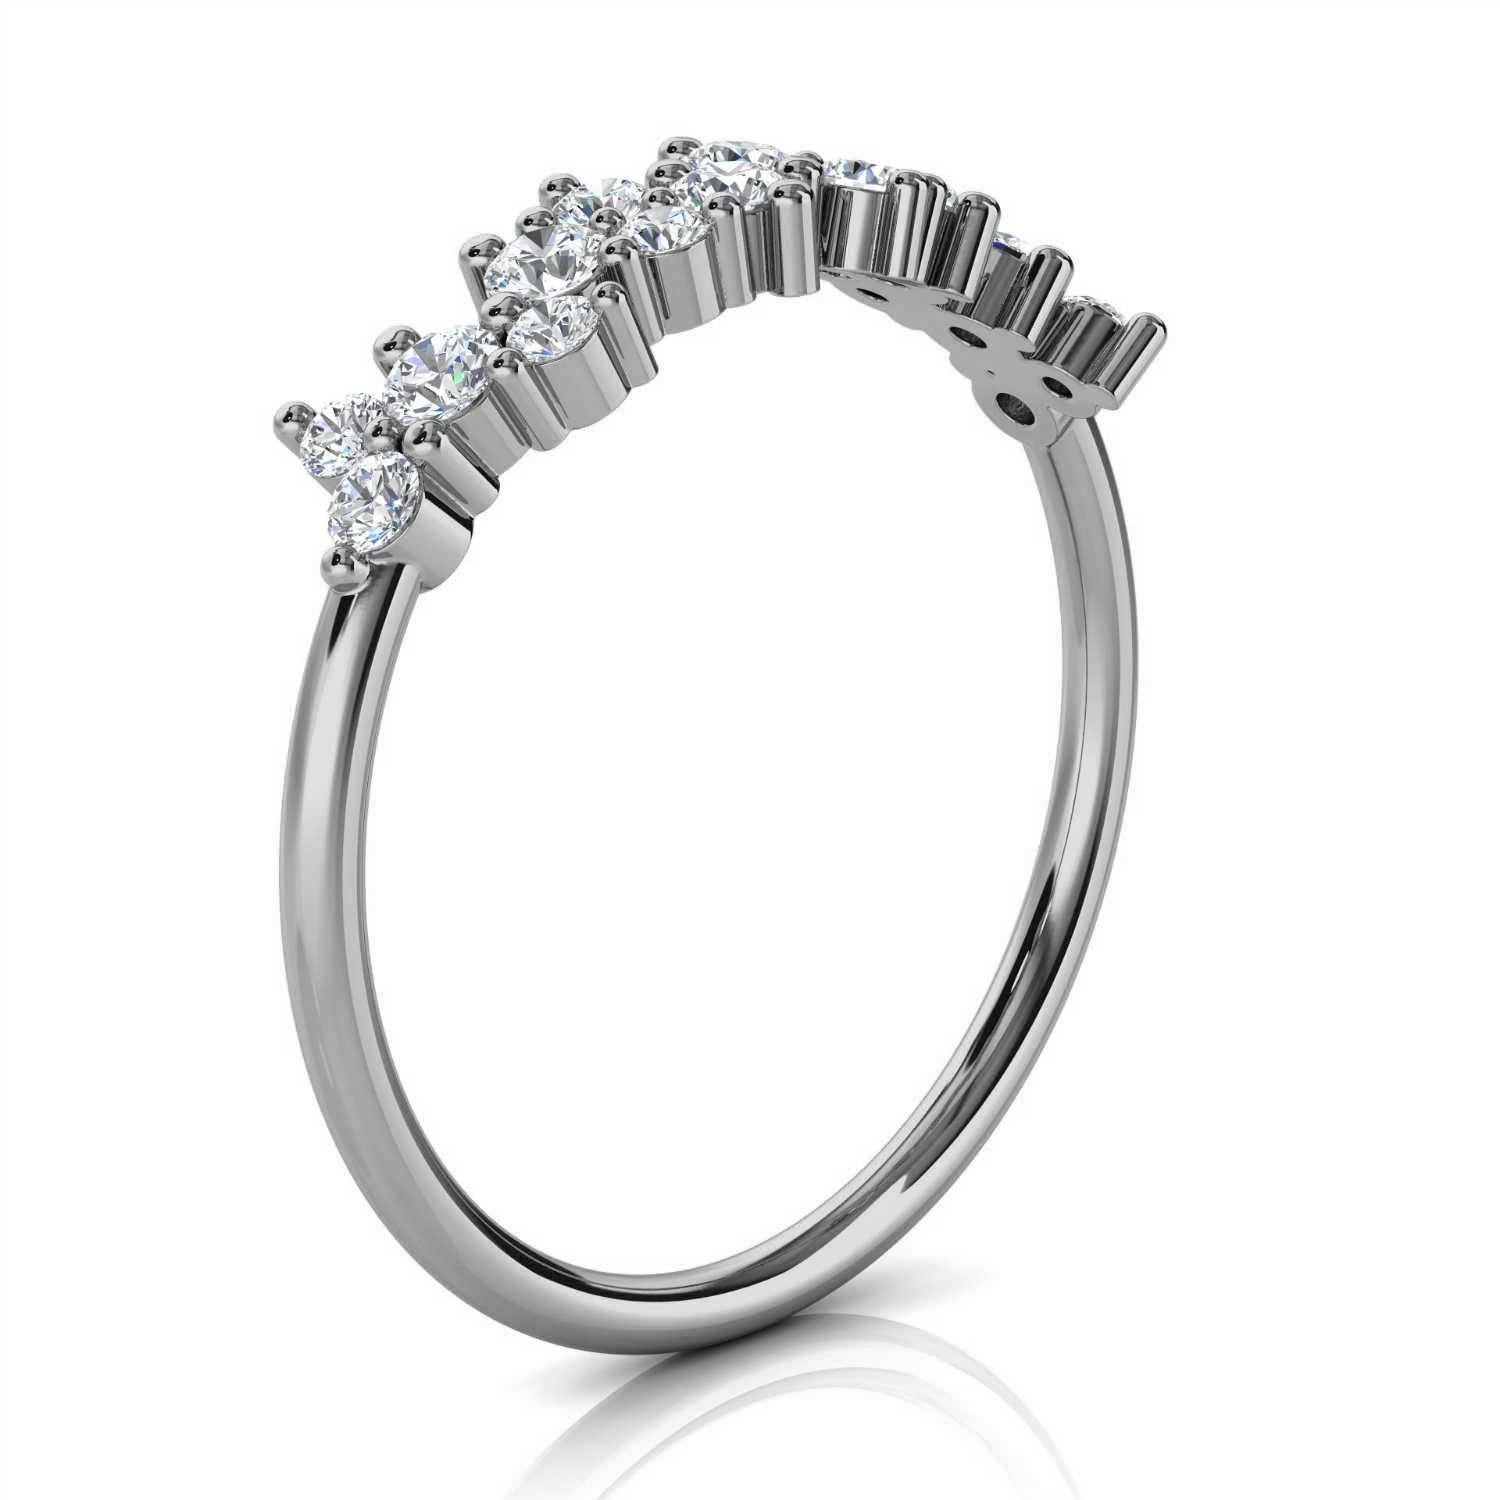 Dieser zarte Ring ist mit sechzehn (16) runden Brillanten besetzt, die auf einem 1,2 mm breiten Band verstreut sind. Die winzigen Zacken, die die Diamanten halten, unterstreichen sein organisches Aussehen. Stapeln Sie es - es ist perfekt! Erleben